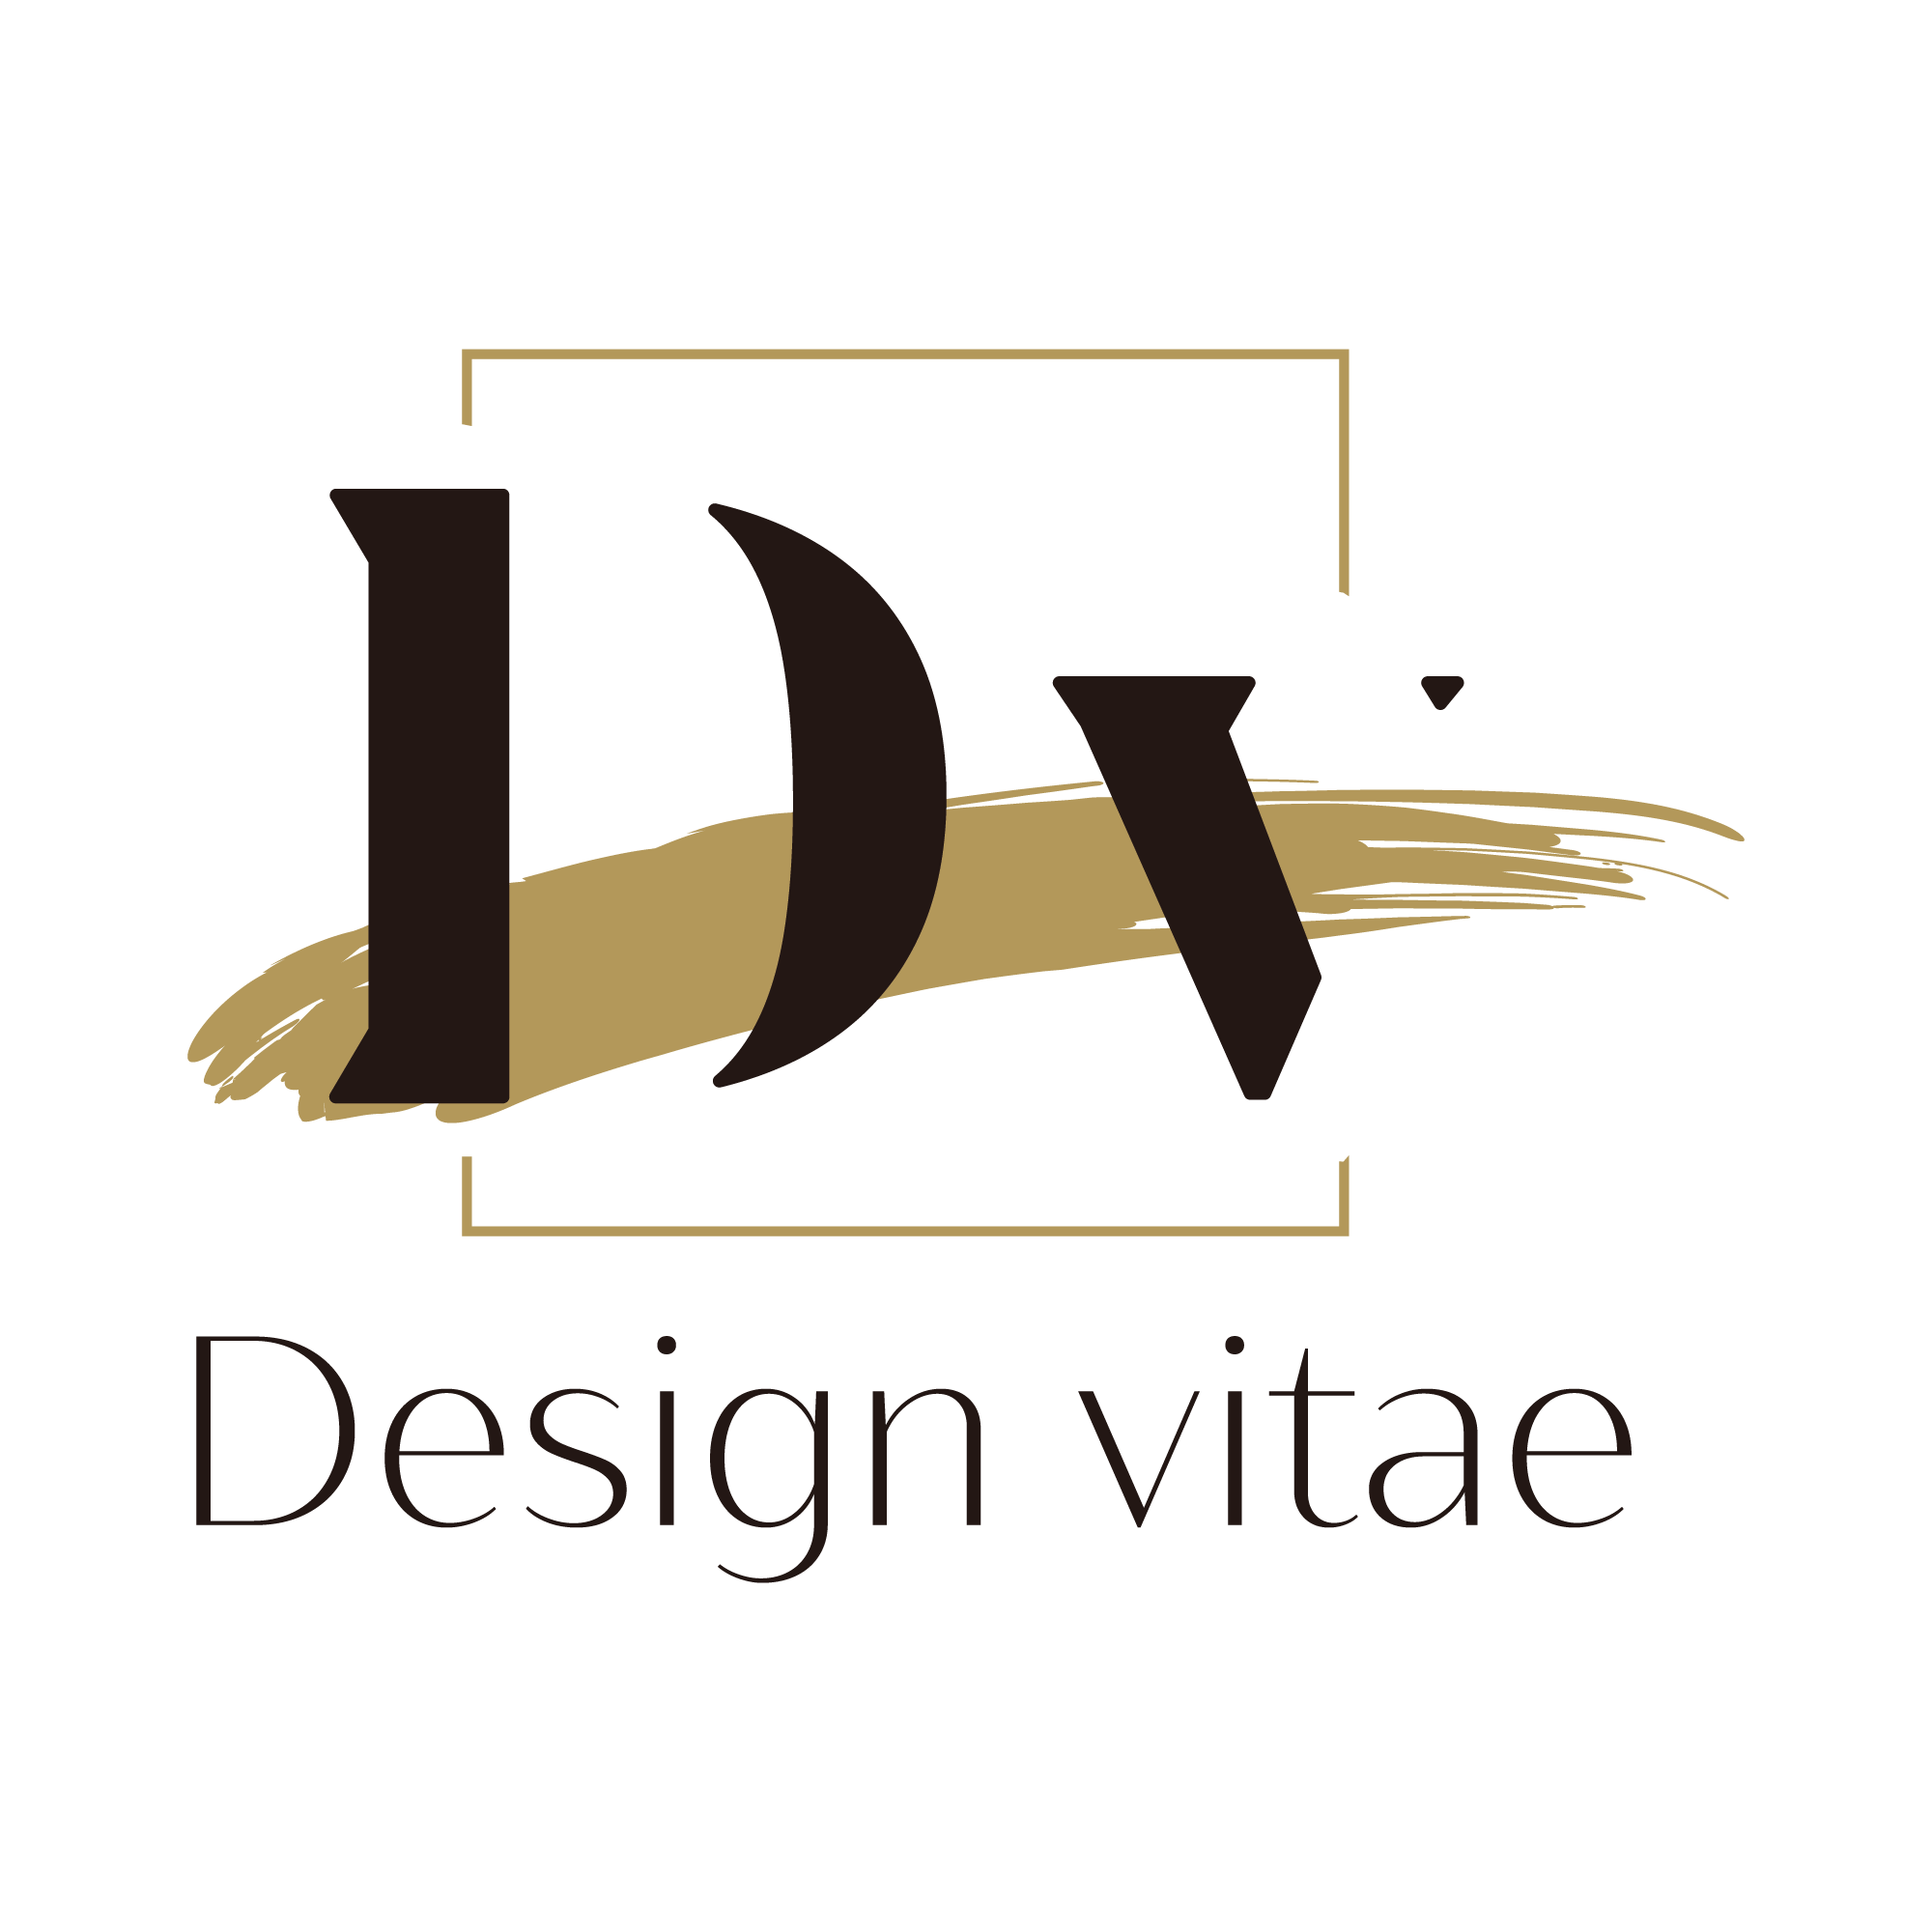 Design vitaeデモサイト